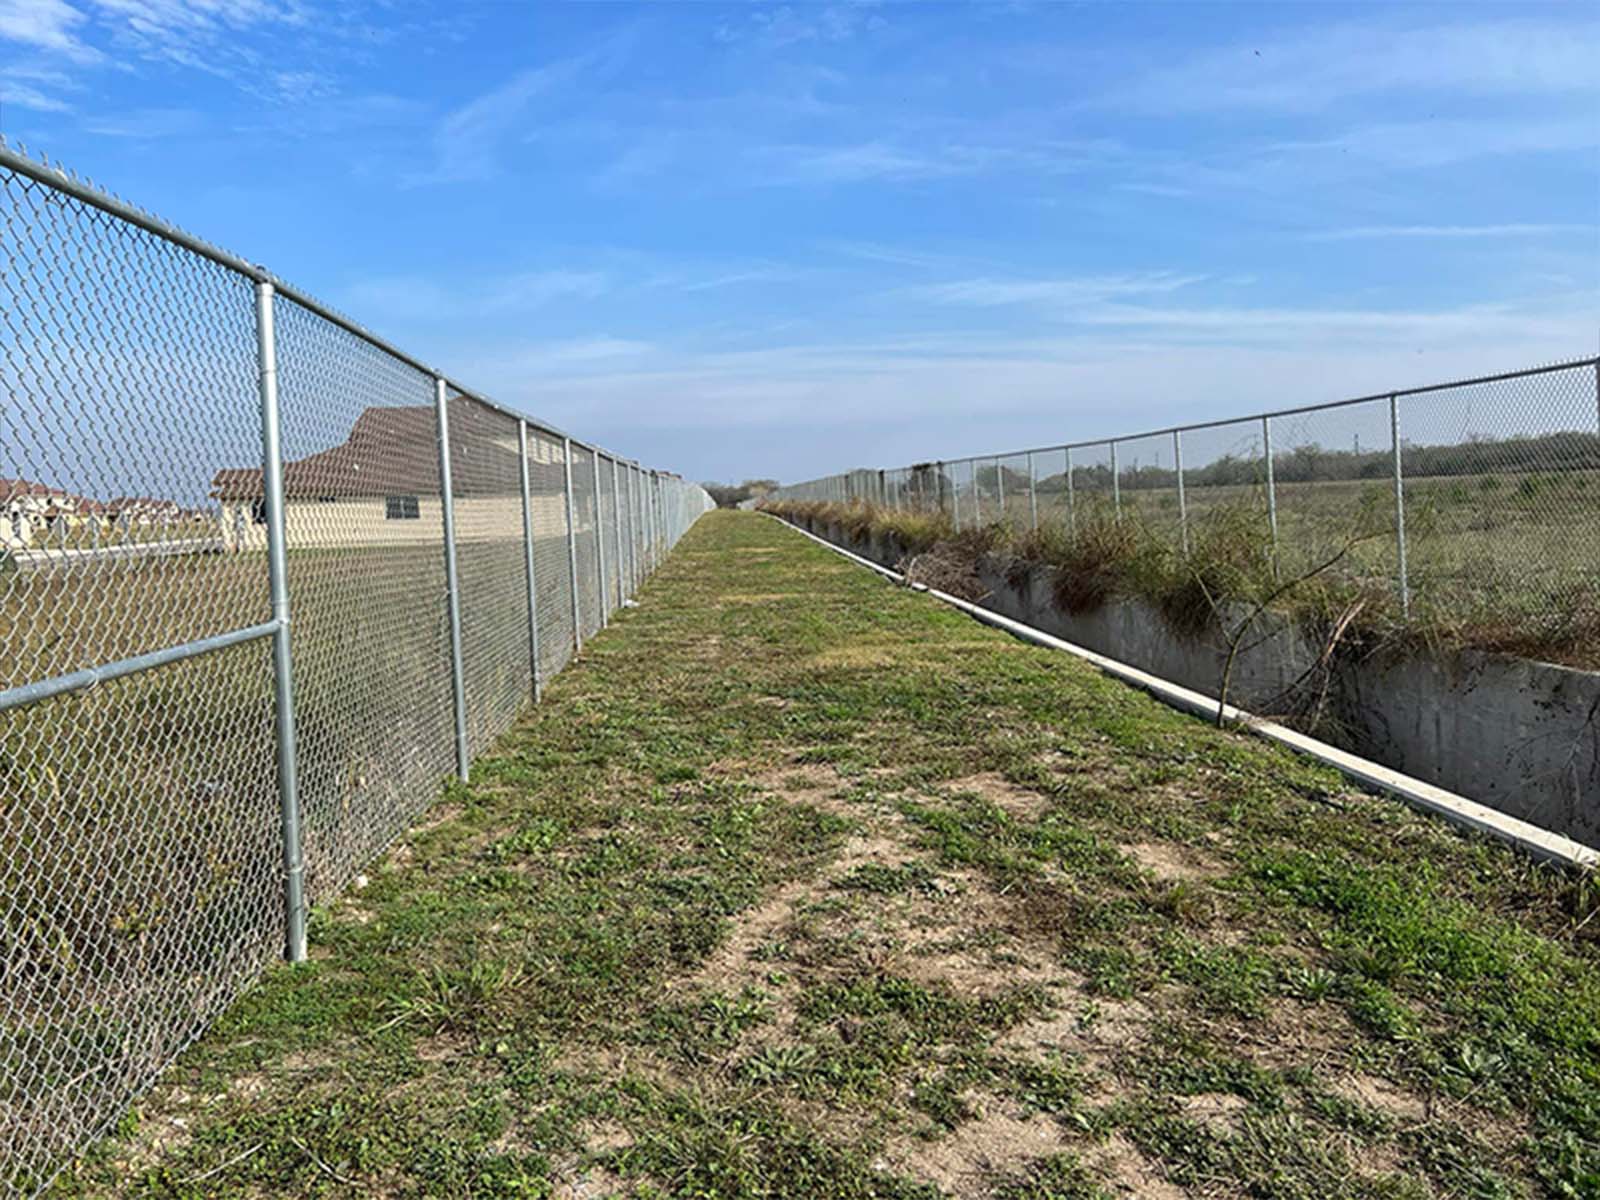 Chain Link Fence Contractor in San Antonio Texas